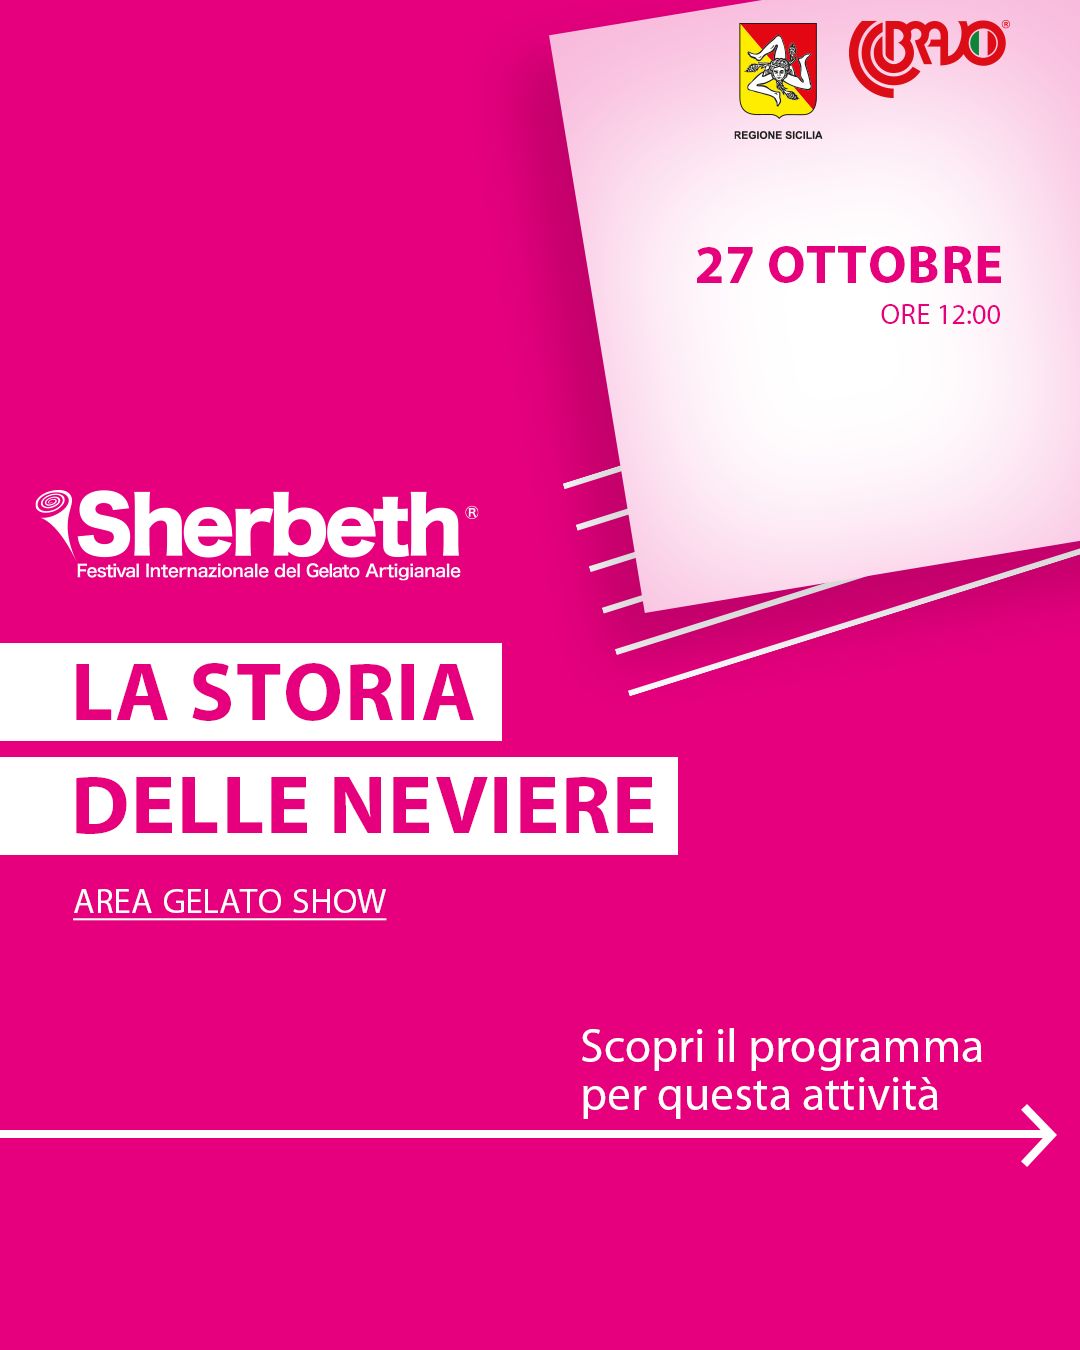 SHERBETH  Festival Internazionale del Gelato Artigianale - Palermo.